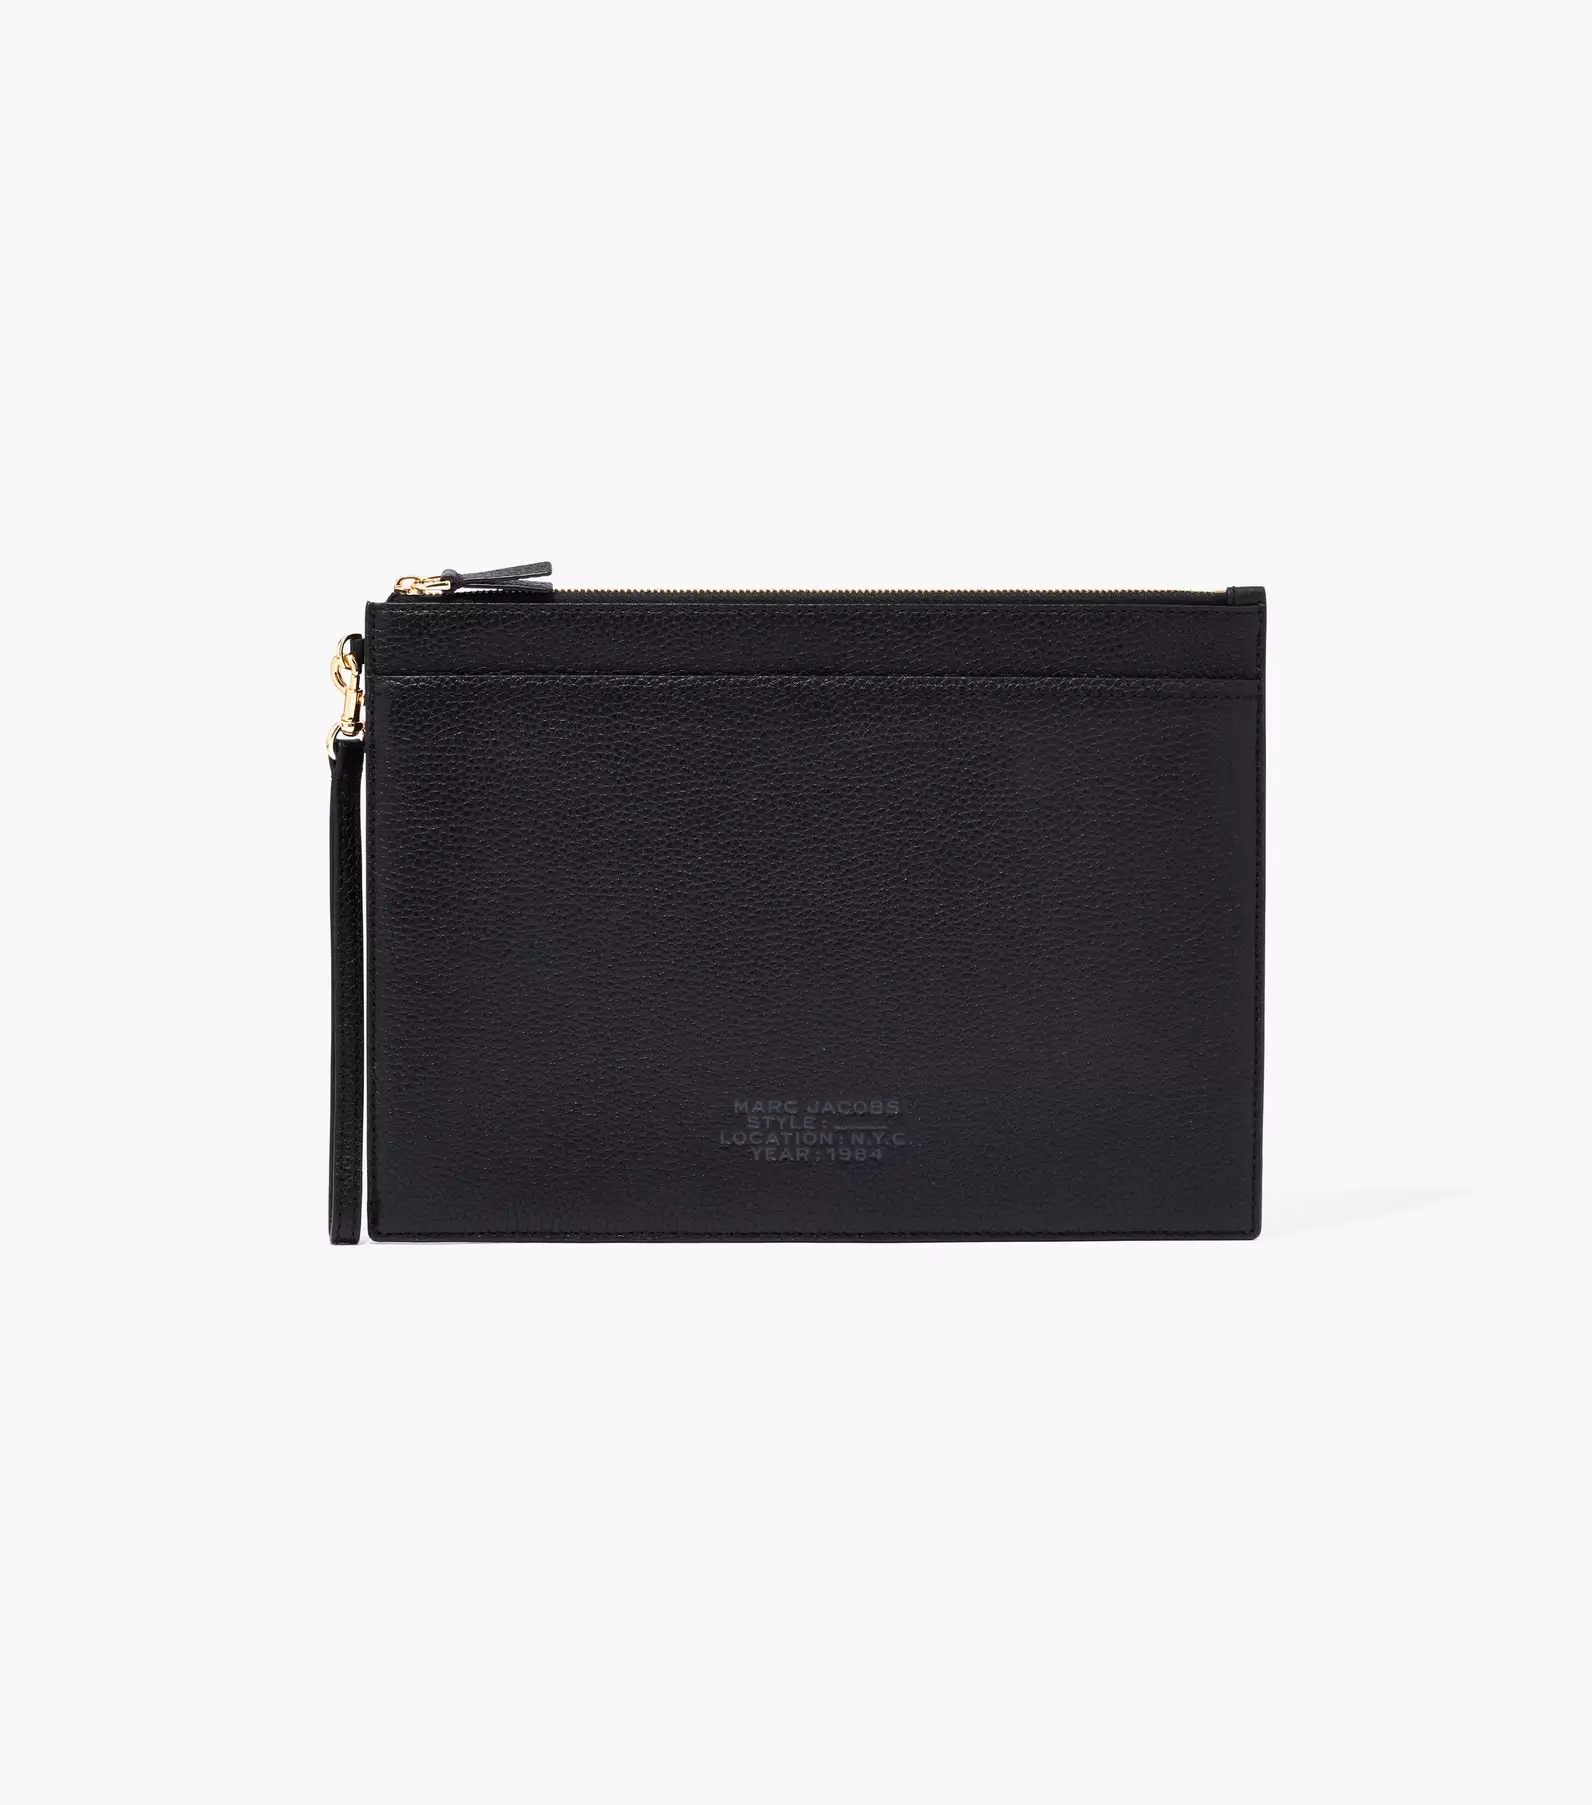 Marc Jacobs The Top Zip Wristlet Wallet